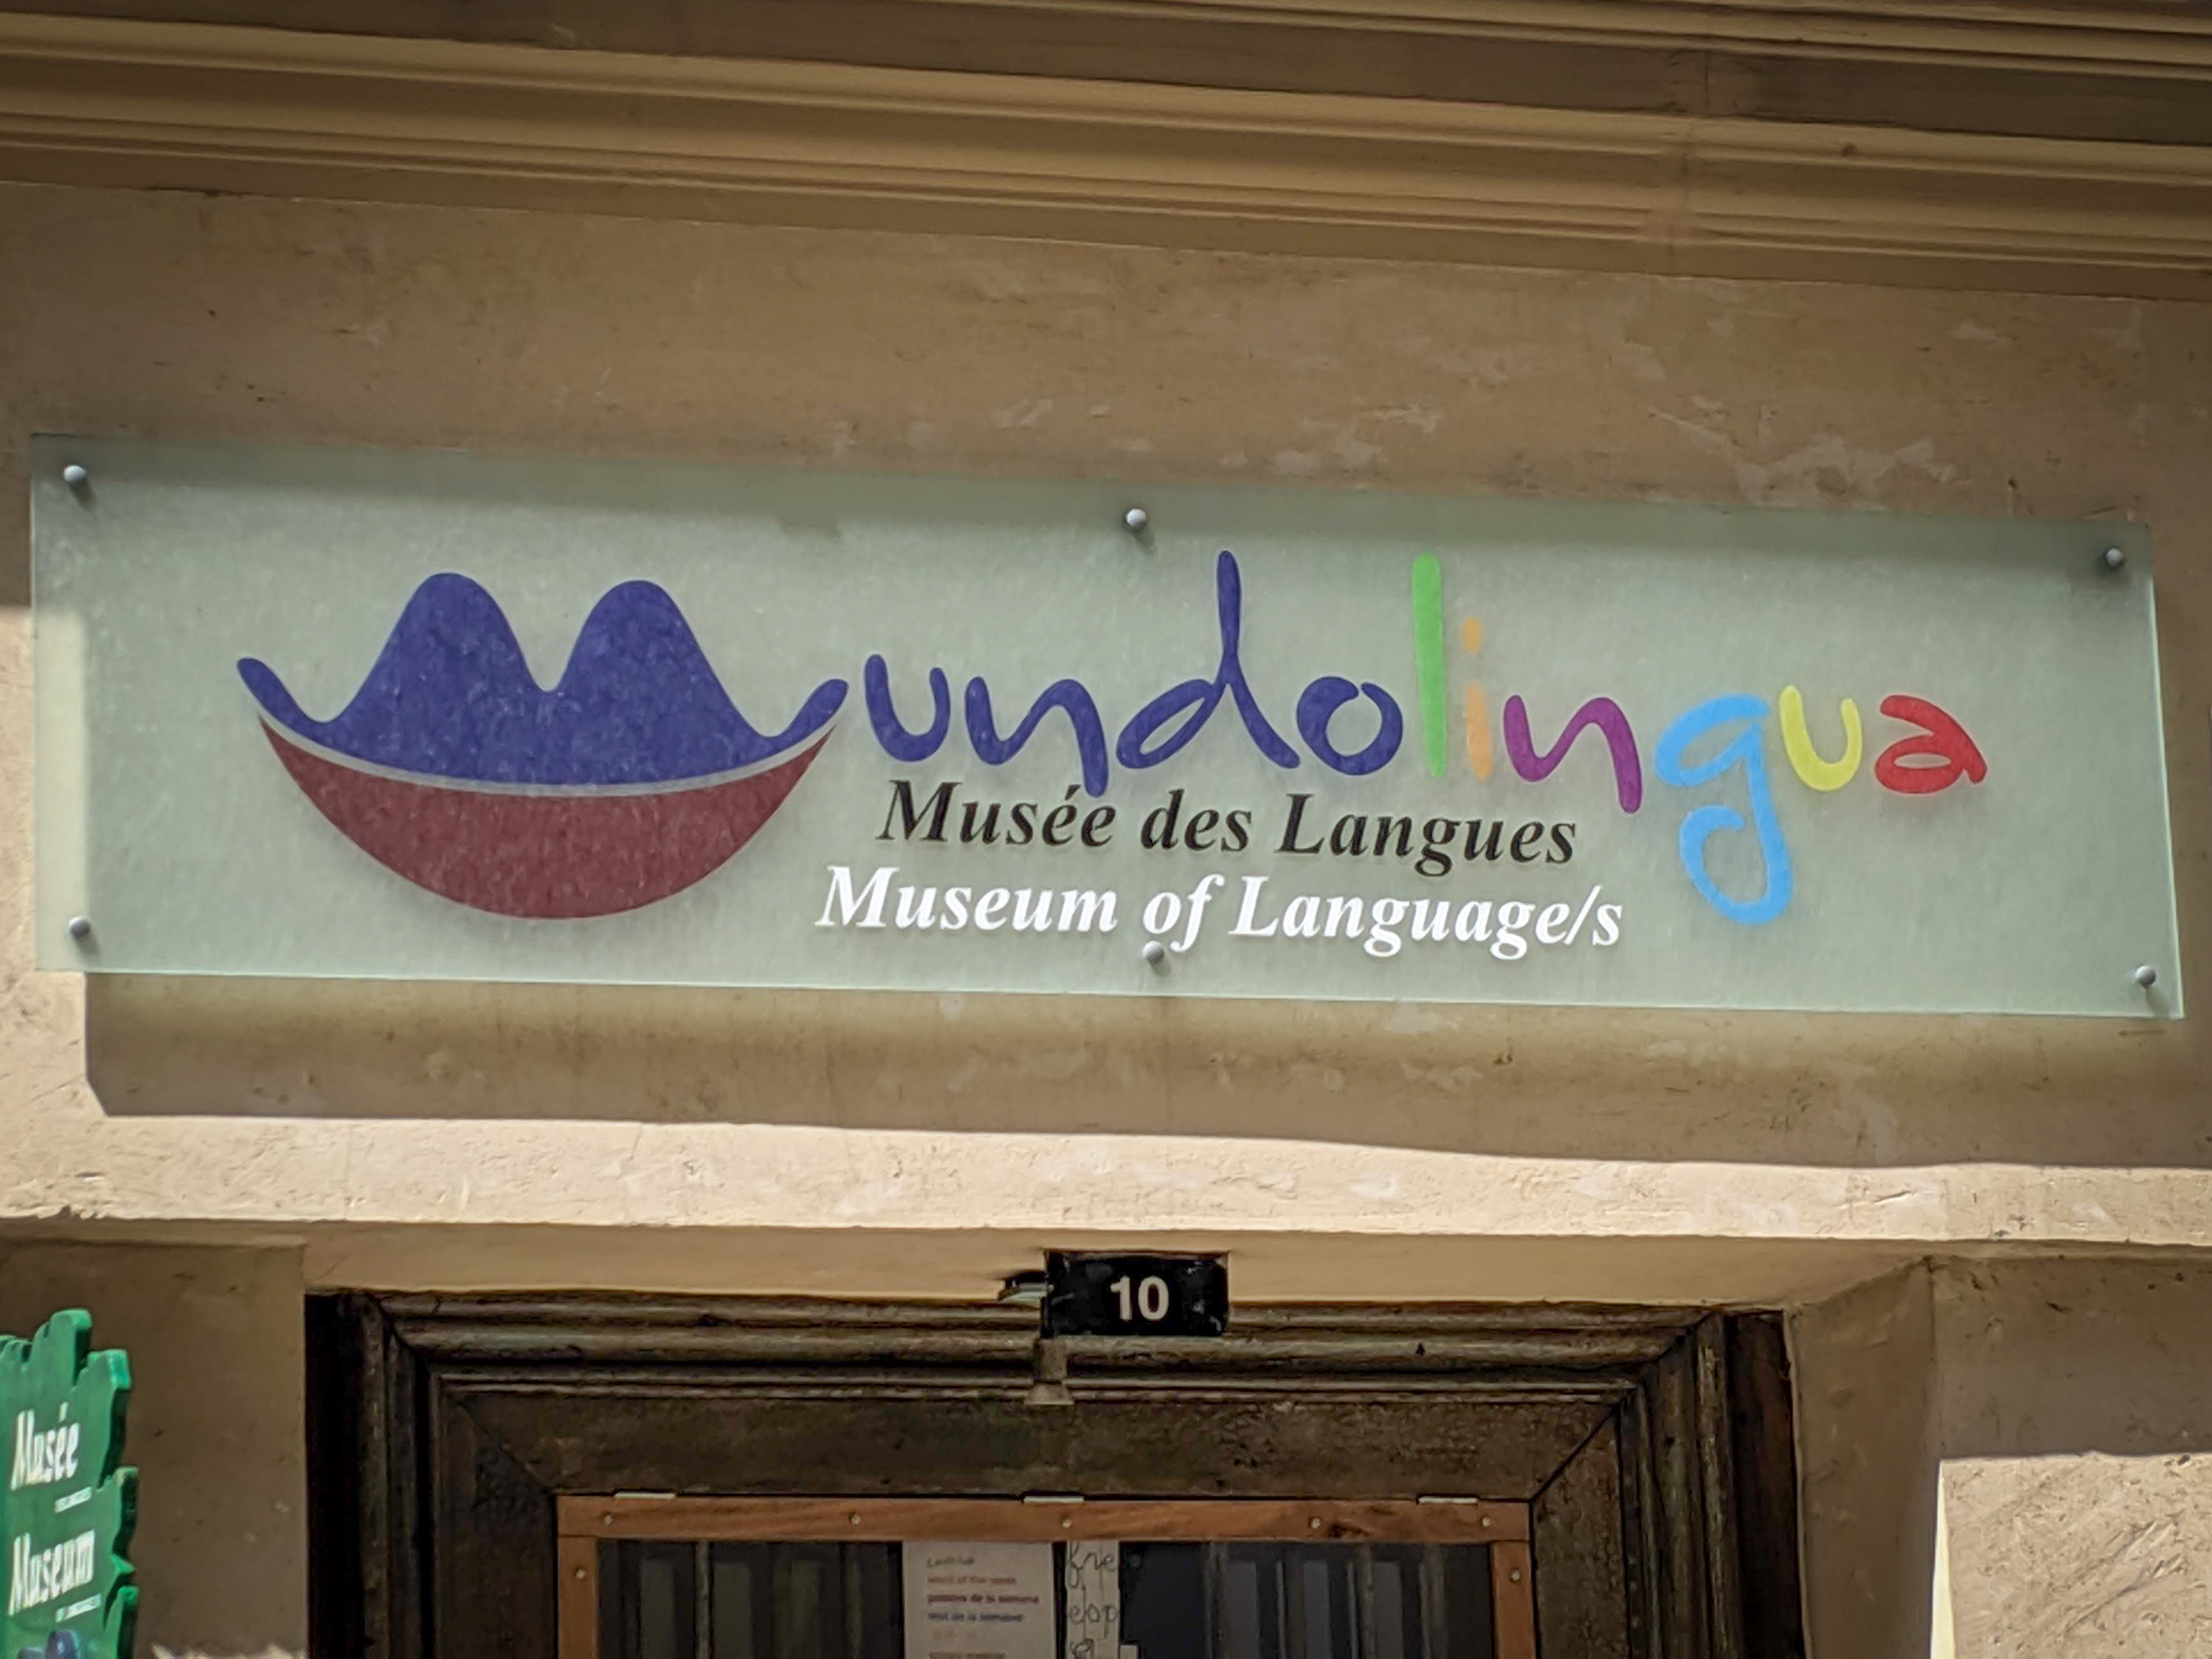 Mundolingua, Musée des Langues, Museum of Language, Paris, languages